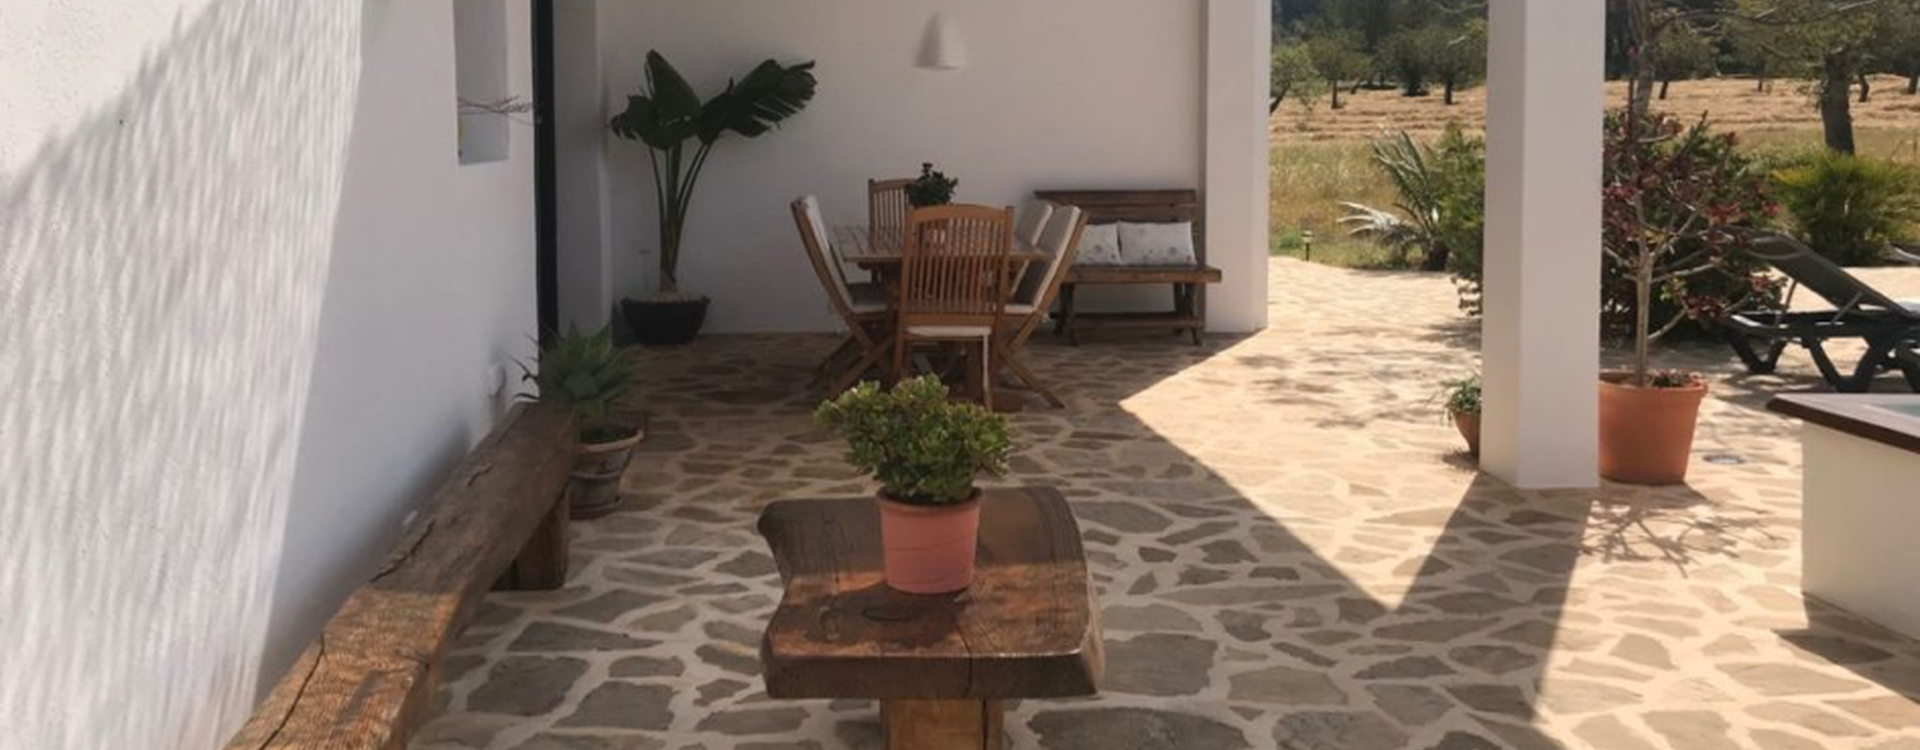 Villa Finca Gertrudis te huur op Ibiza - Terras